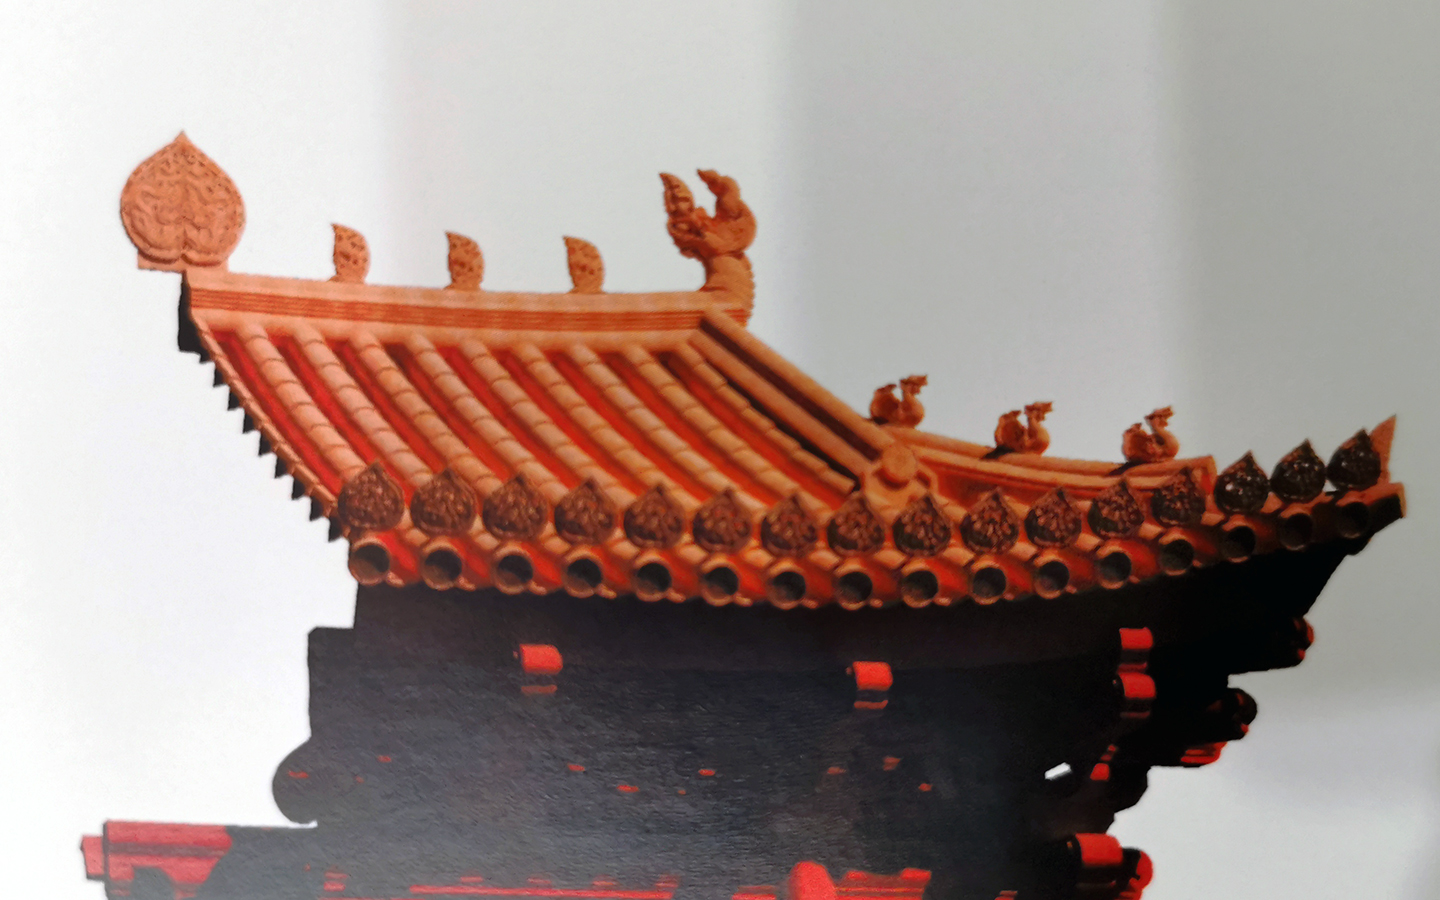 “Lầu son gác tía” Hoàng thành Thăng Long 1000 năm trước qua hình ảnh 3D - Ảnh 22.